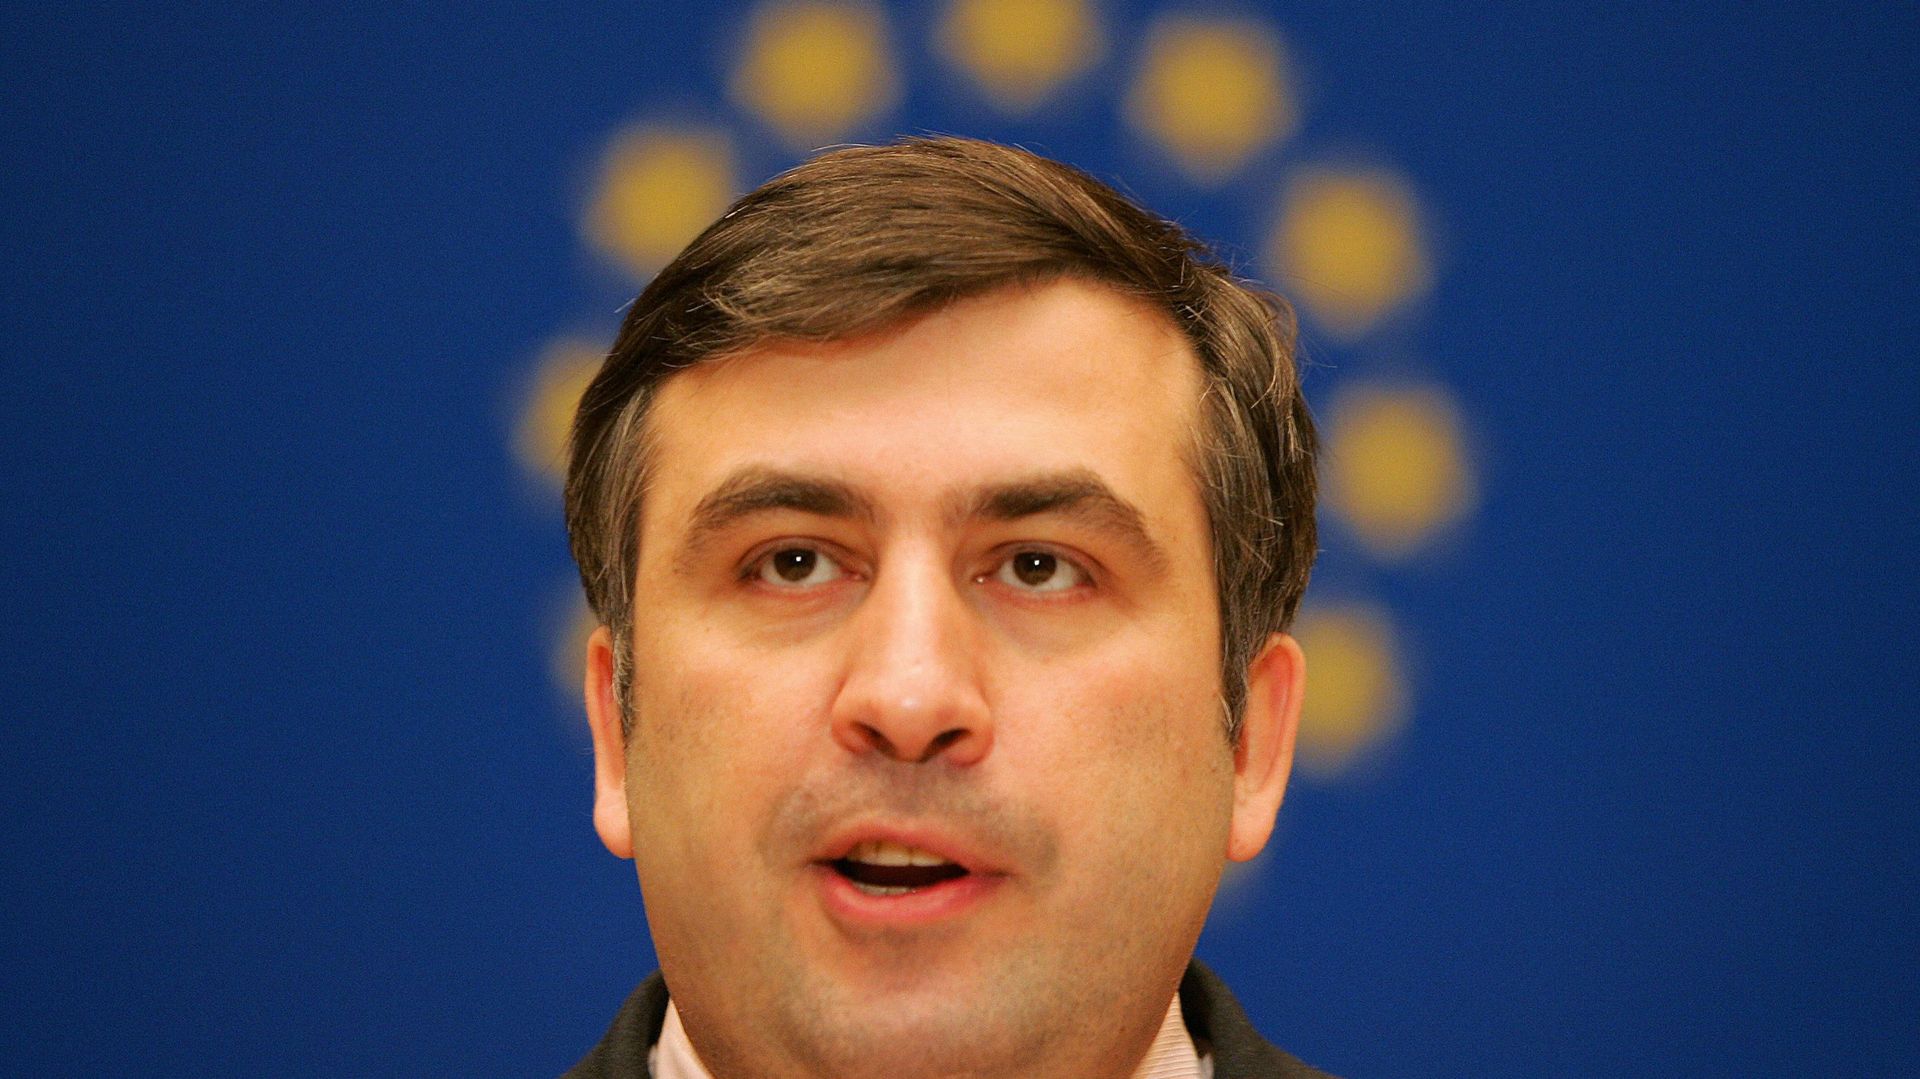 le président géorgien Mikhail Saakaschvili s’exprime devant l’assemblée parlementaire du Conseil de l’Europe, le 26 janvier 2005 à Strasbourg.
